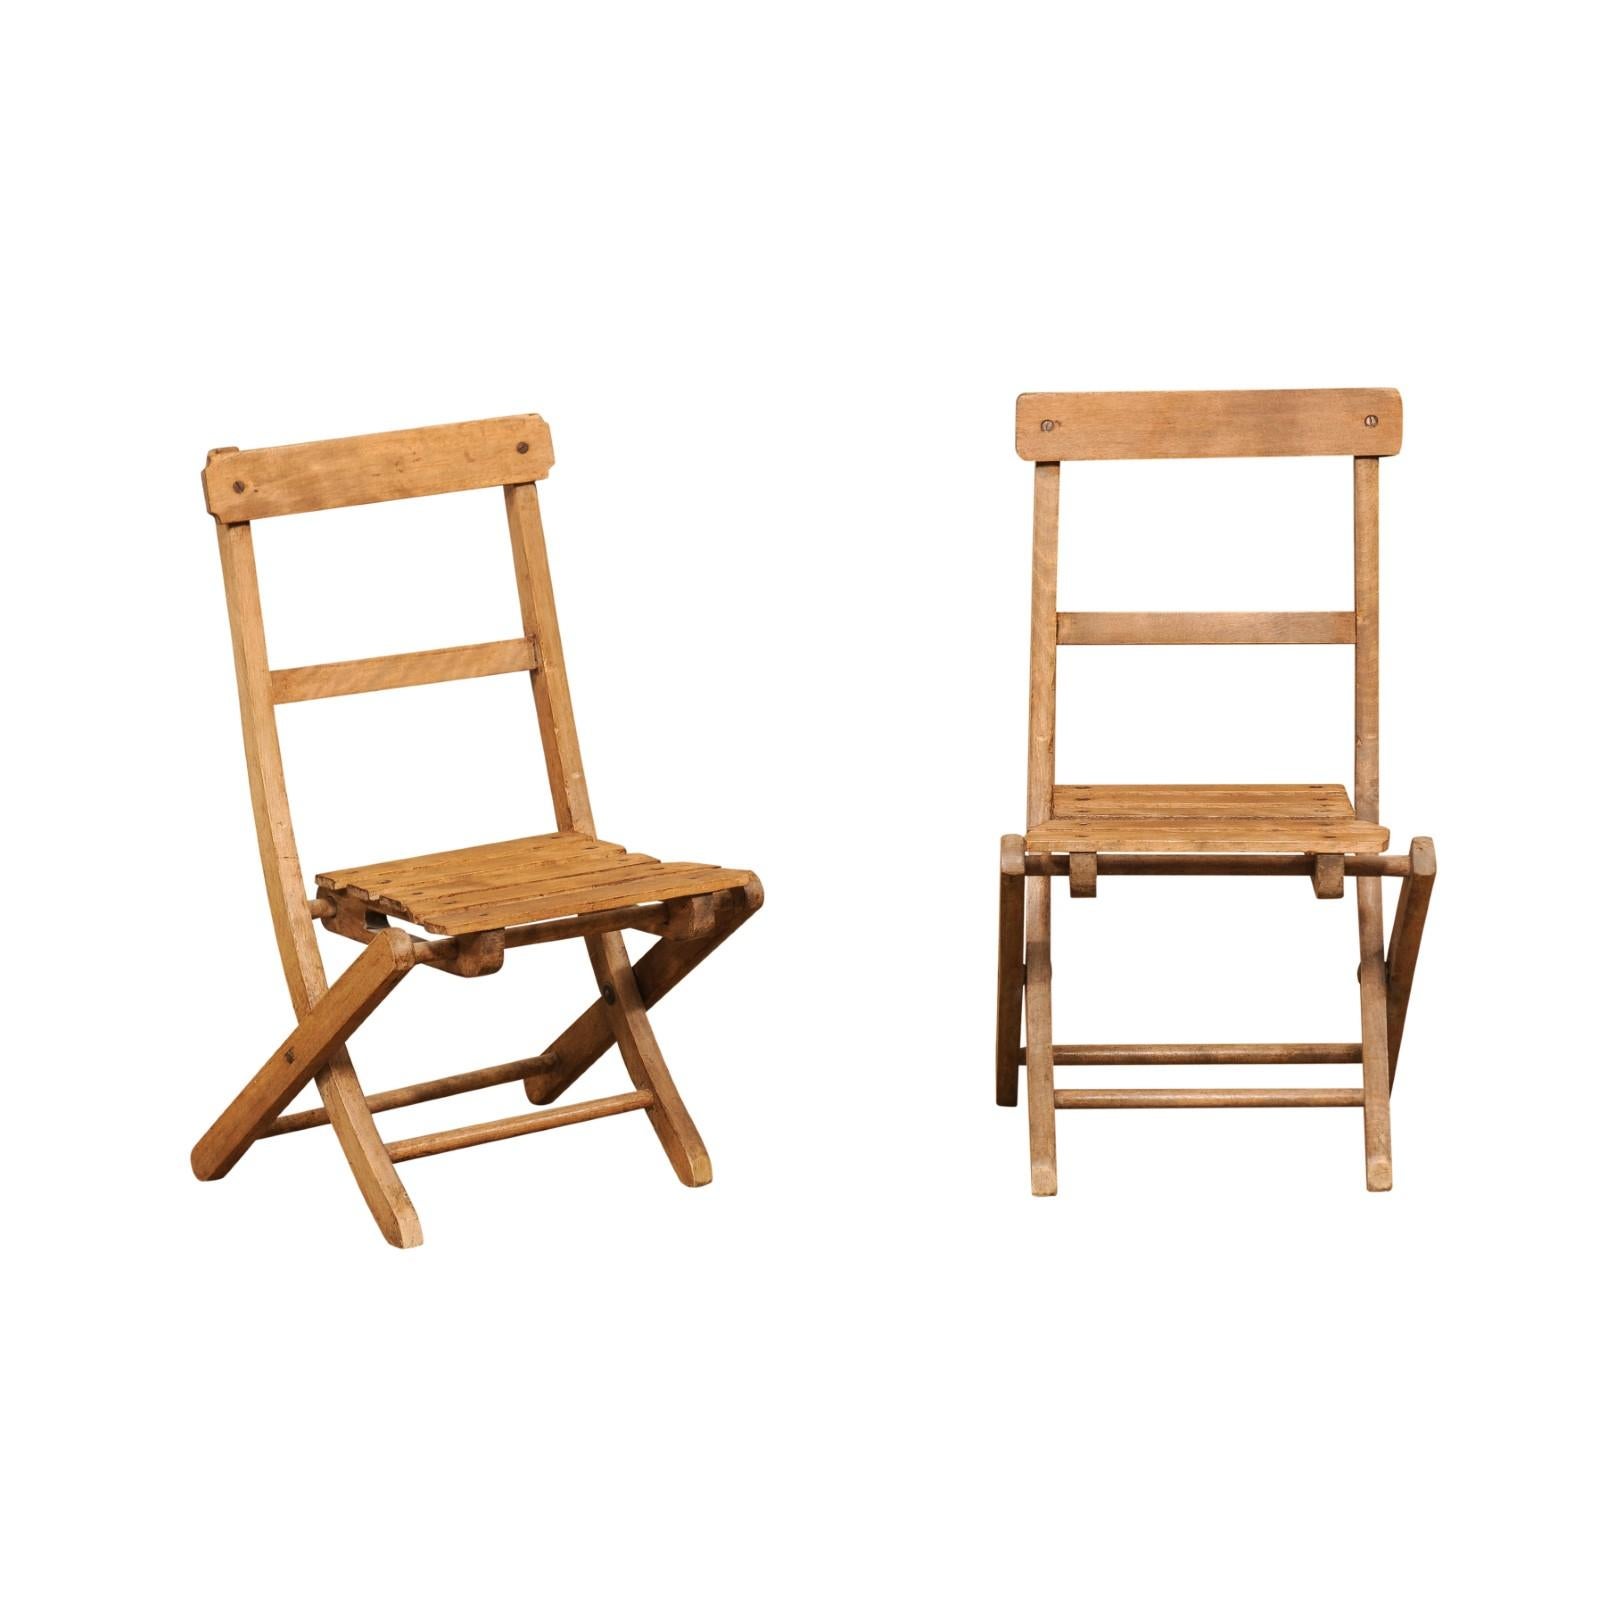 Zwei kleine rustikale englische Kinderklappstühle aus Holz aus dem 20. Jahrhundert, mit Lattenrost, offener Rückenlehne und seitlichen Streckern, Preis und Verkauf je $295. Diese beiden Kinderstühle, die im England des 20. Jahrhunderts entstanden